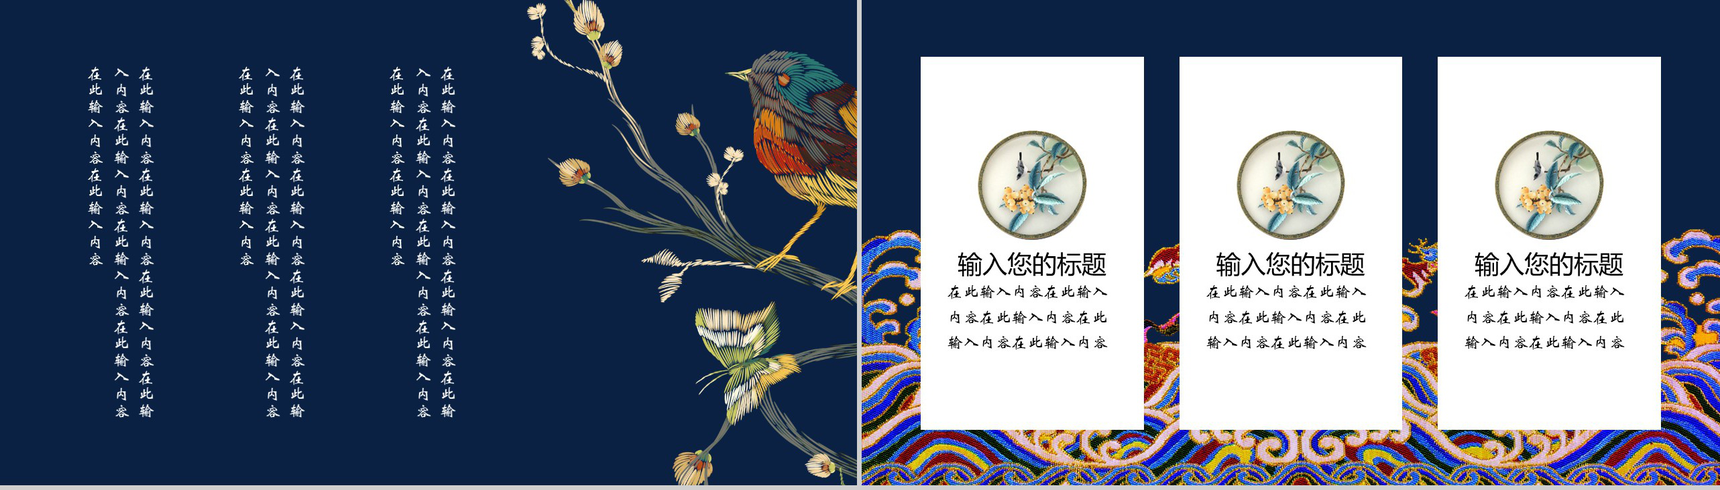 中国之美刺绣传统手艺PPT模板-8